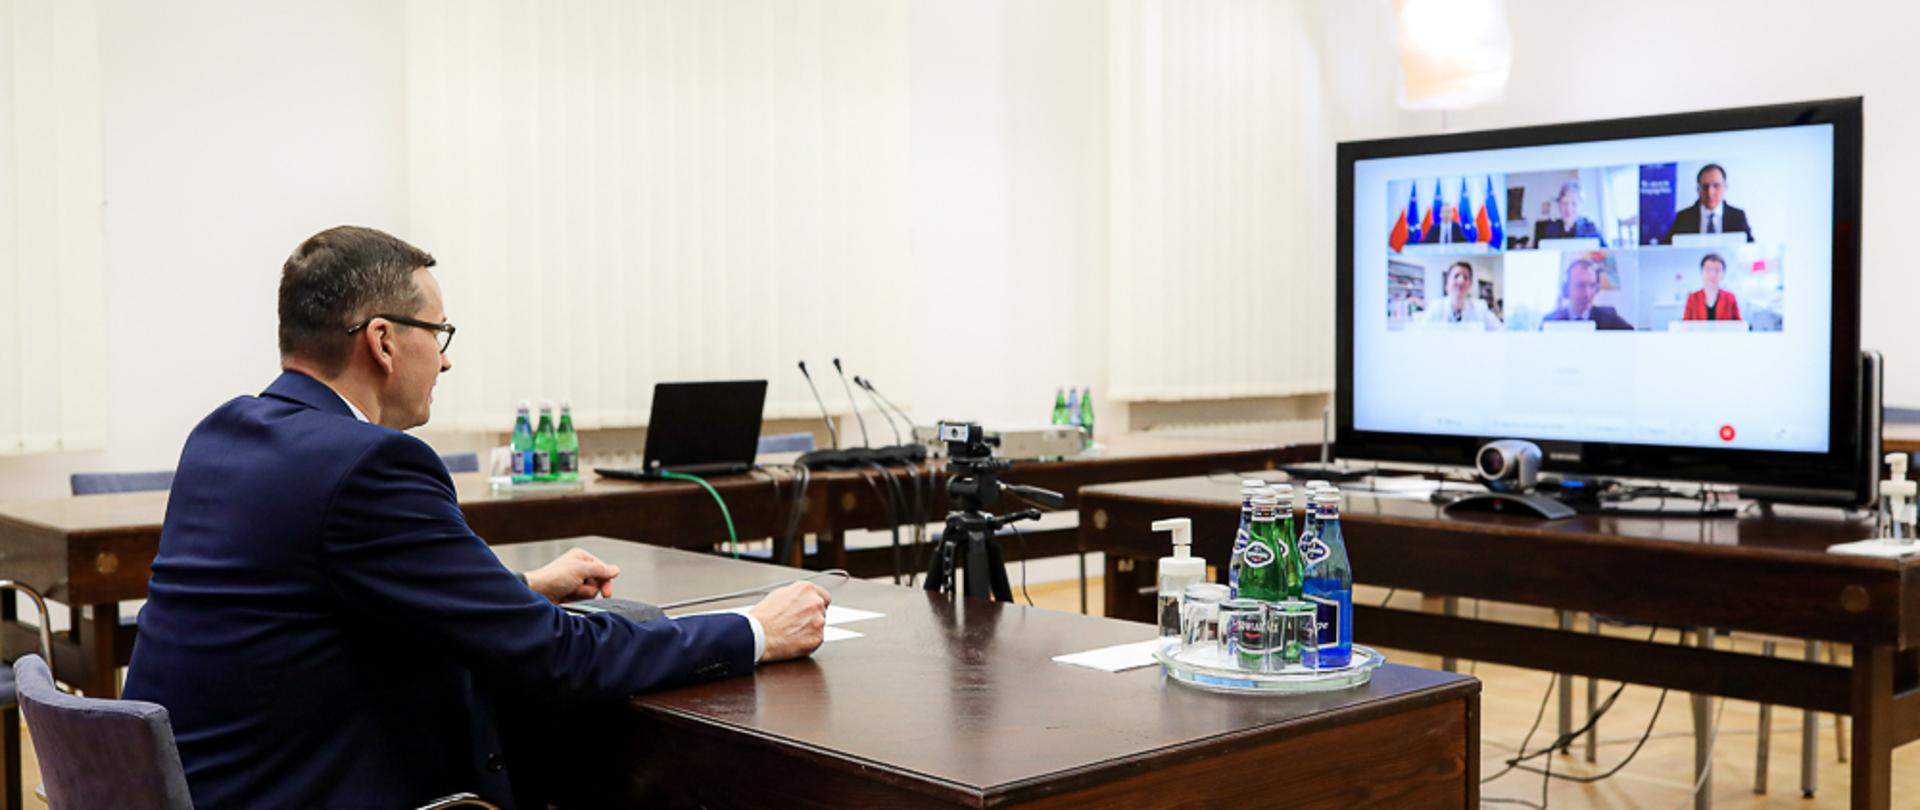 Premier Mateusz Morawiecki siedzi przy biurku, przed nim telewizor na którym widać innych uczestników wideokonferencji.